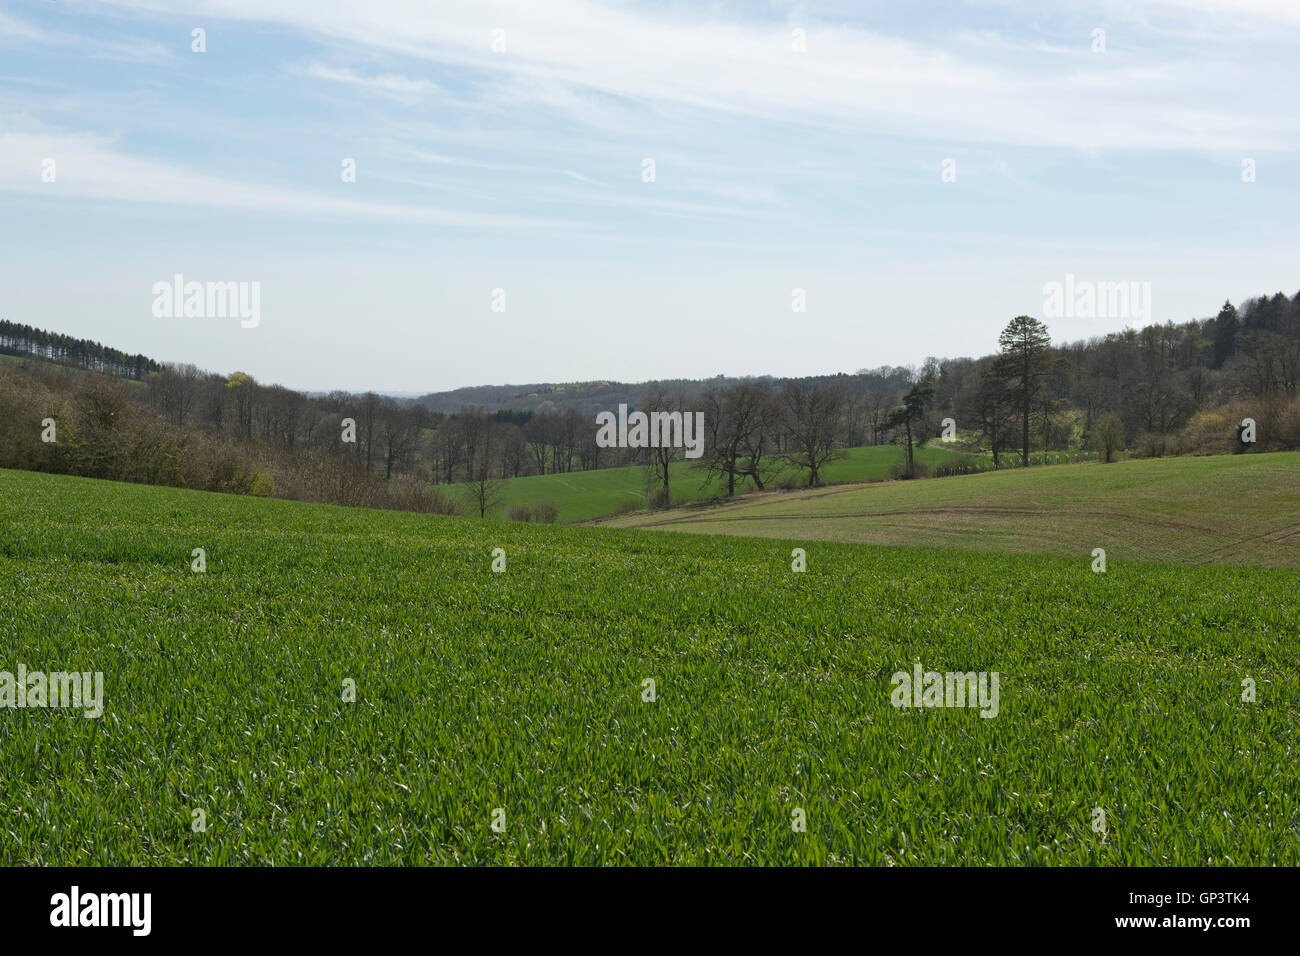 Entwicklung einer Winterweizen Ernte vom Keimling zu ernten, Frühling. Berkshire, April Stockfoto